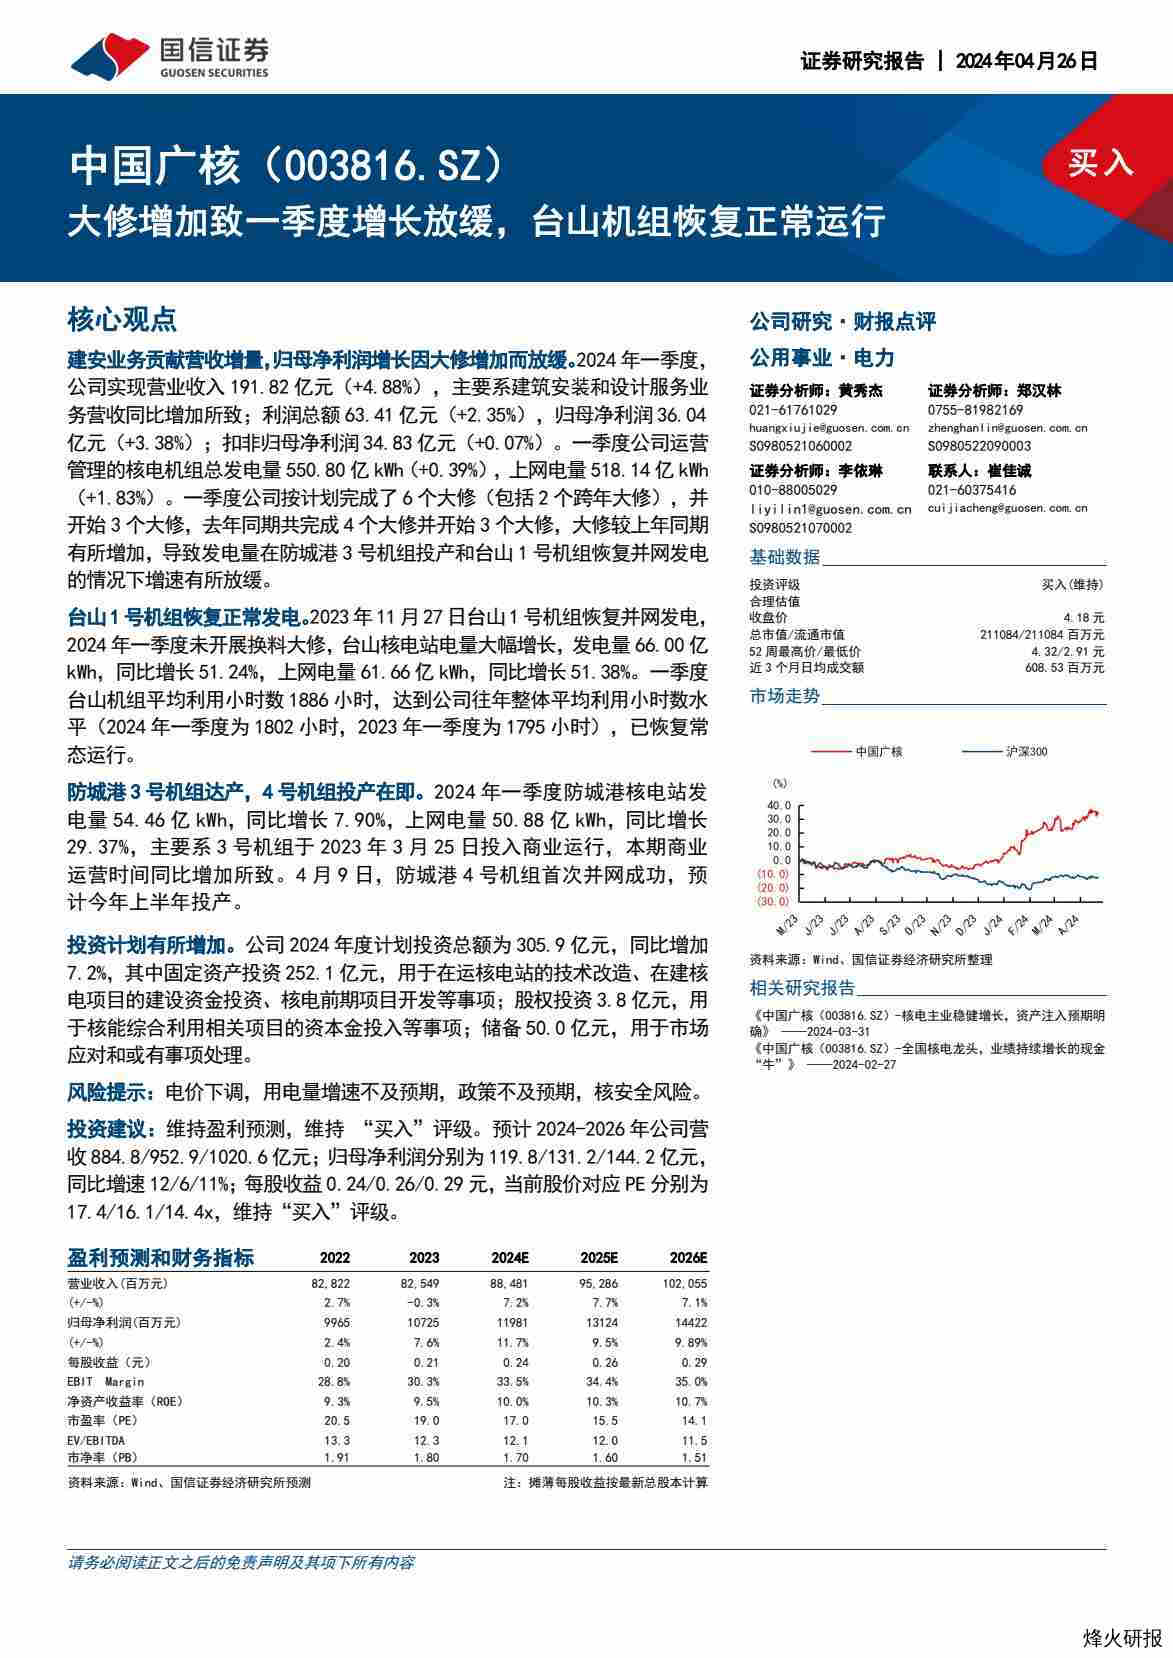 【国信证券】大修增加致一季度增长放缓，台山机组恢复正常运行.pdf-第一页